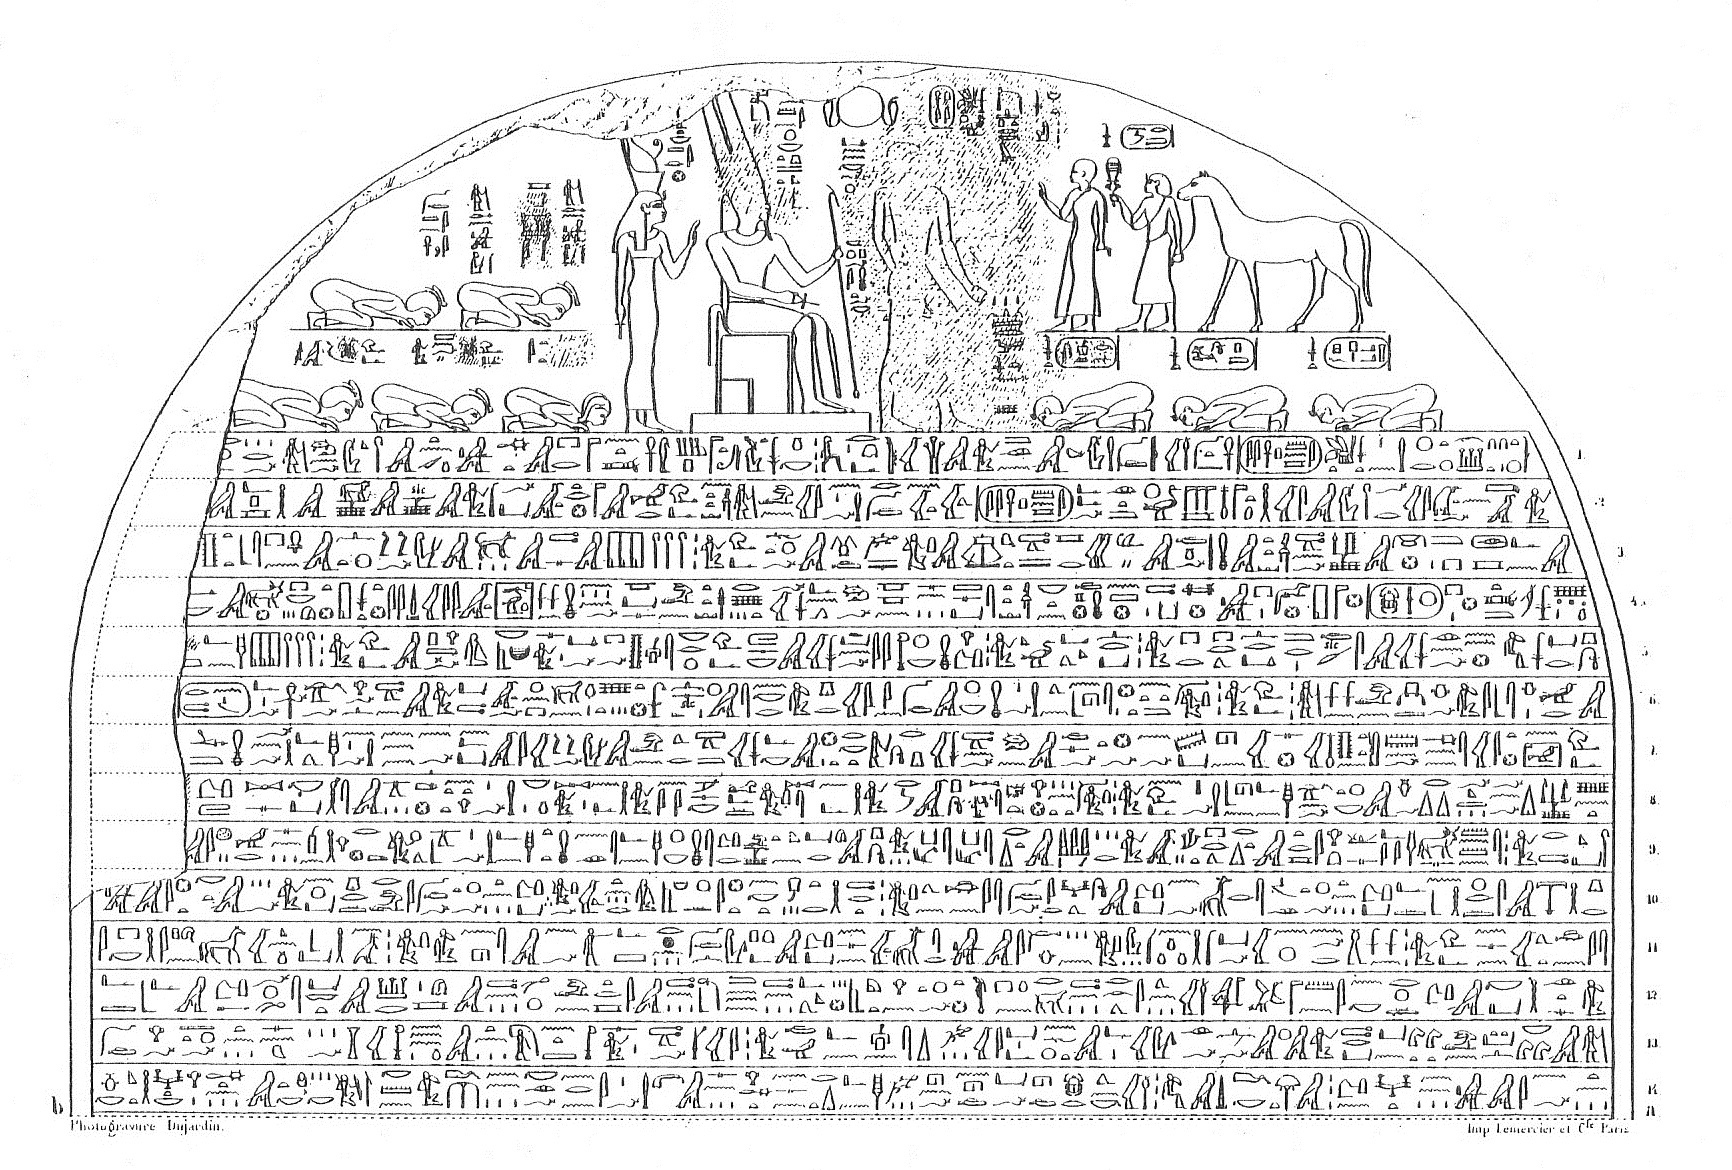 Smarthistory – King Piye and the Kushite control of Egypt